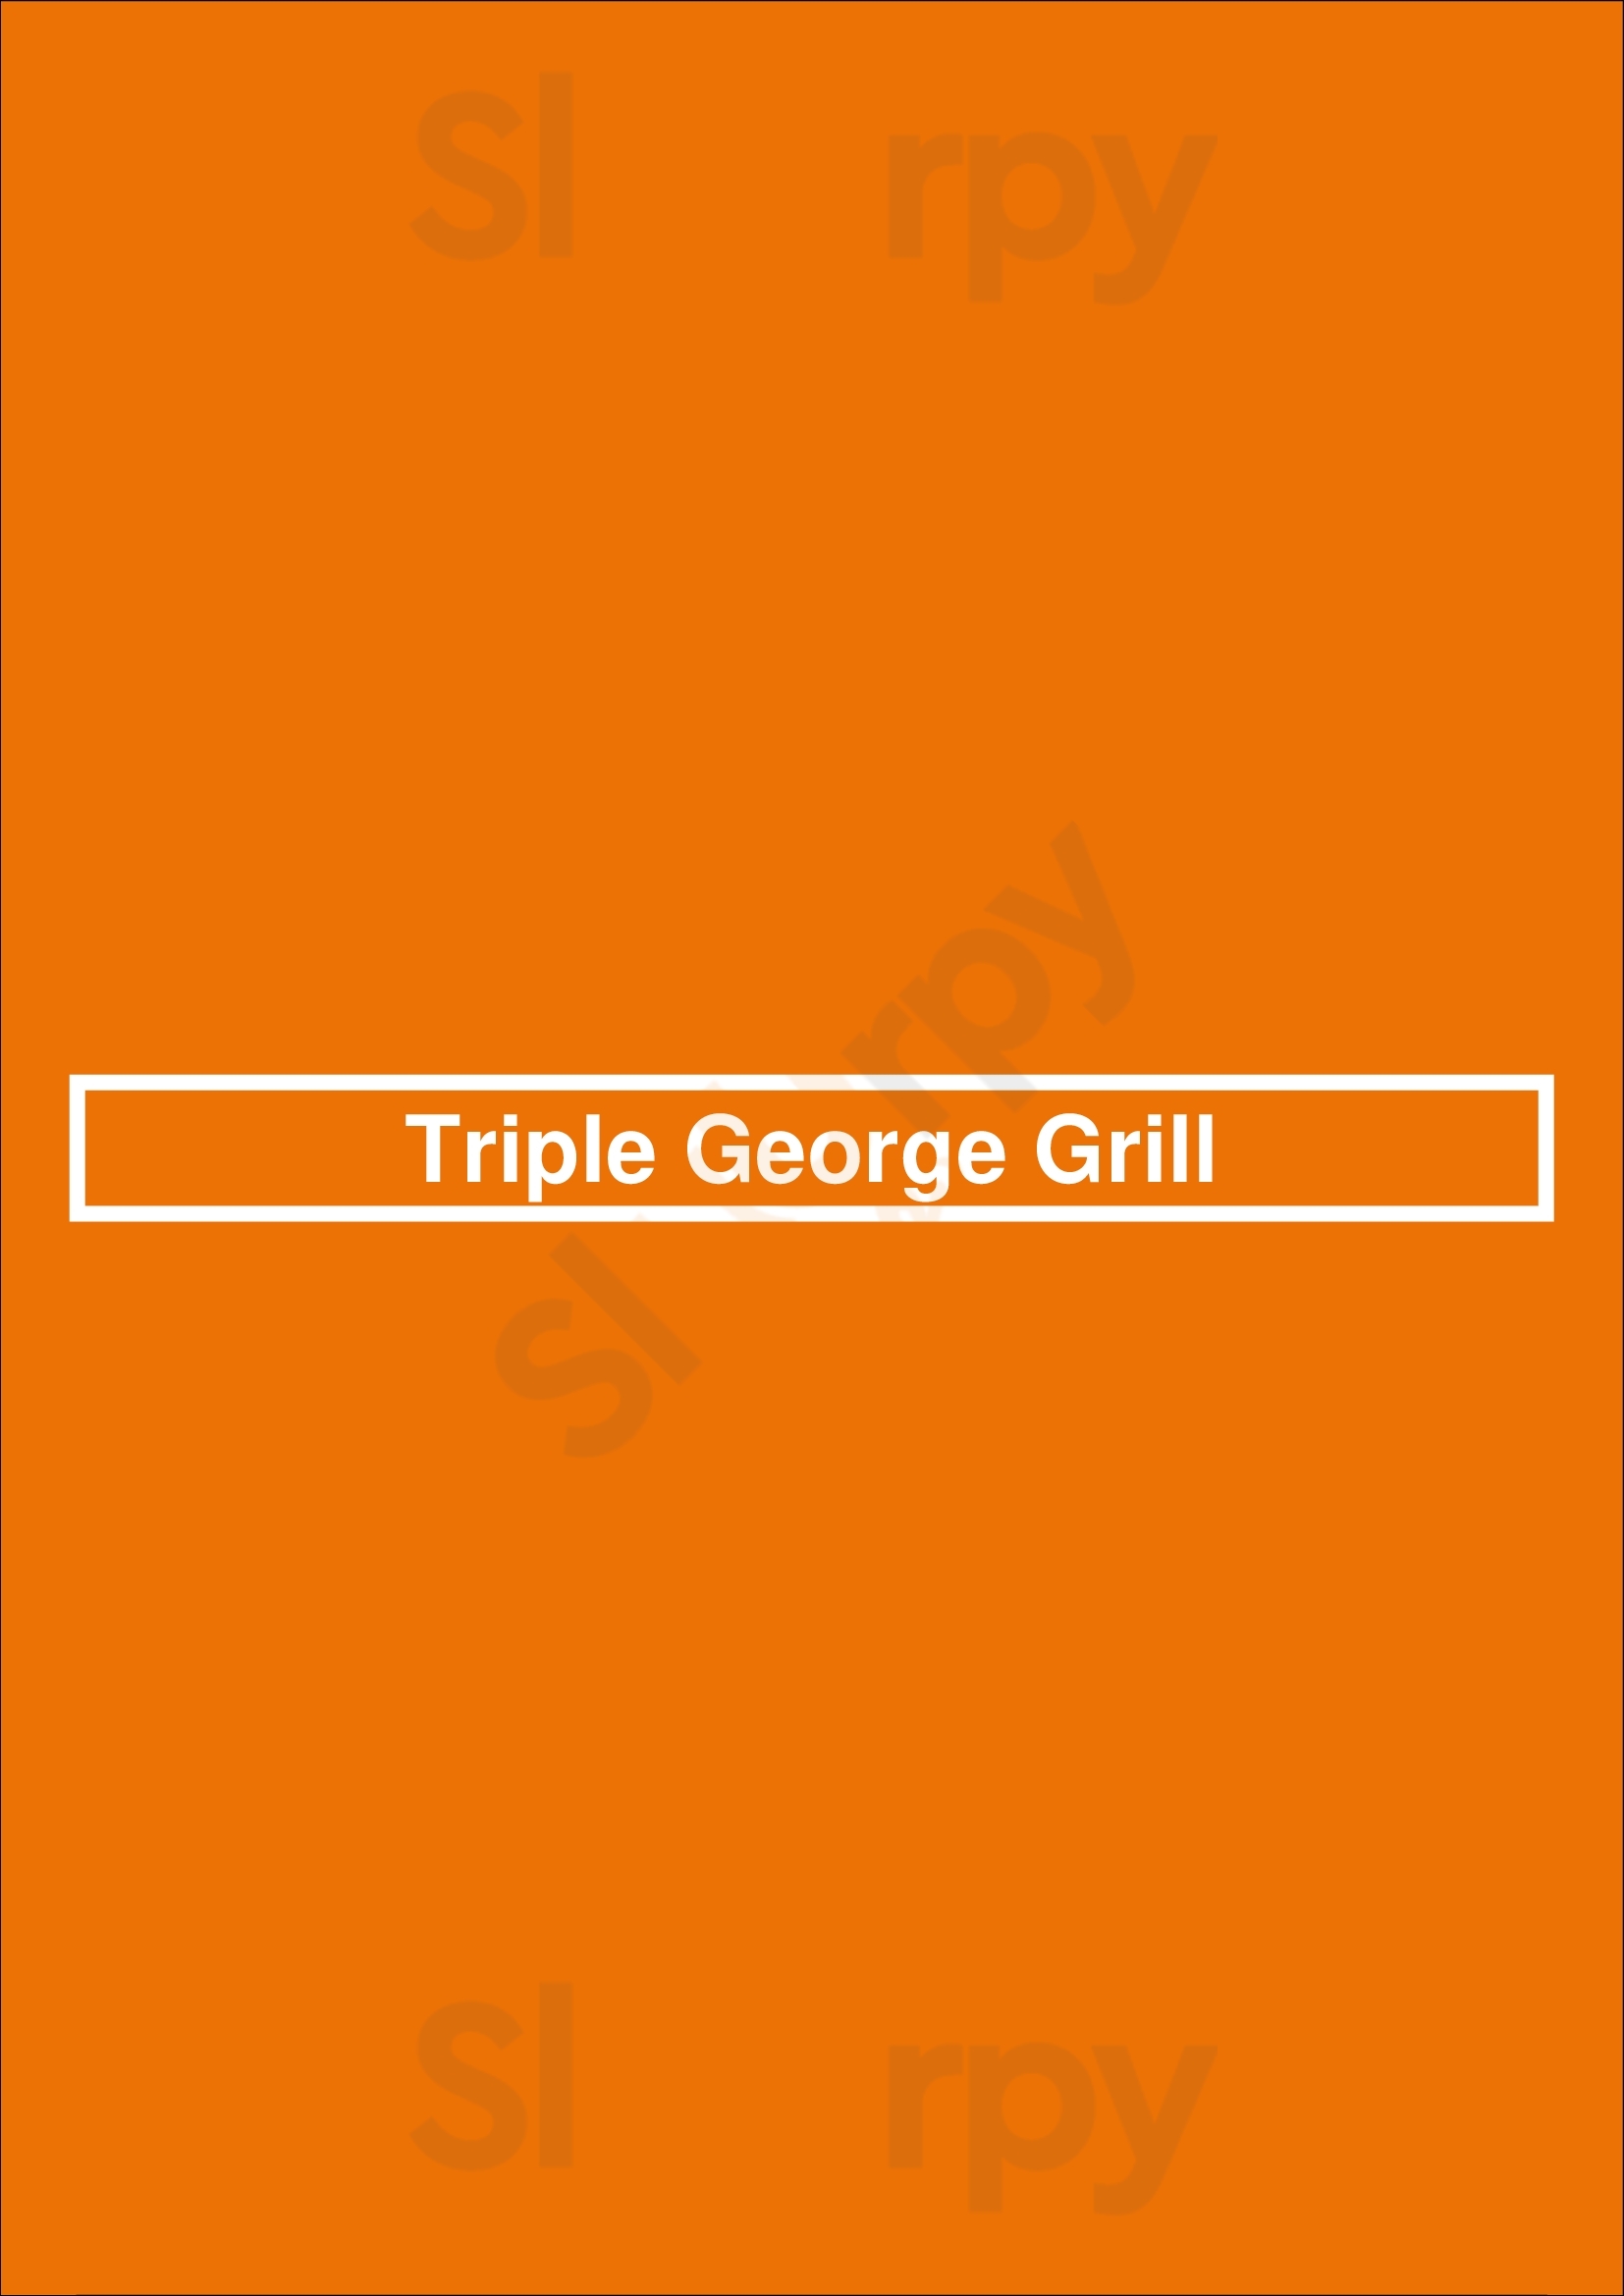 Triple George Grill Las Vegas Menu - 1